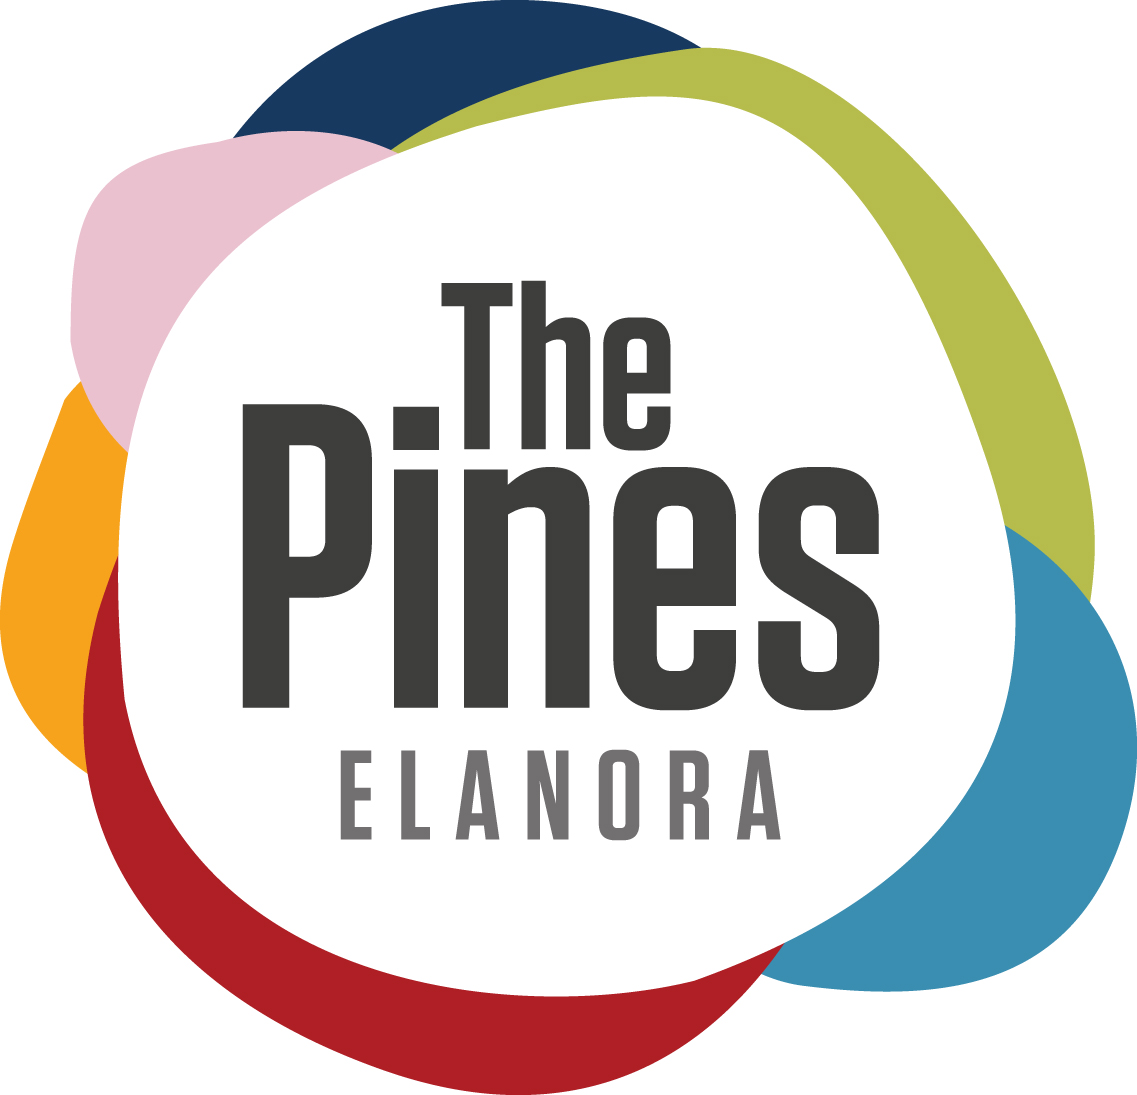 The Pines Elanora Logo